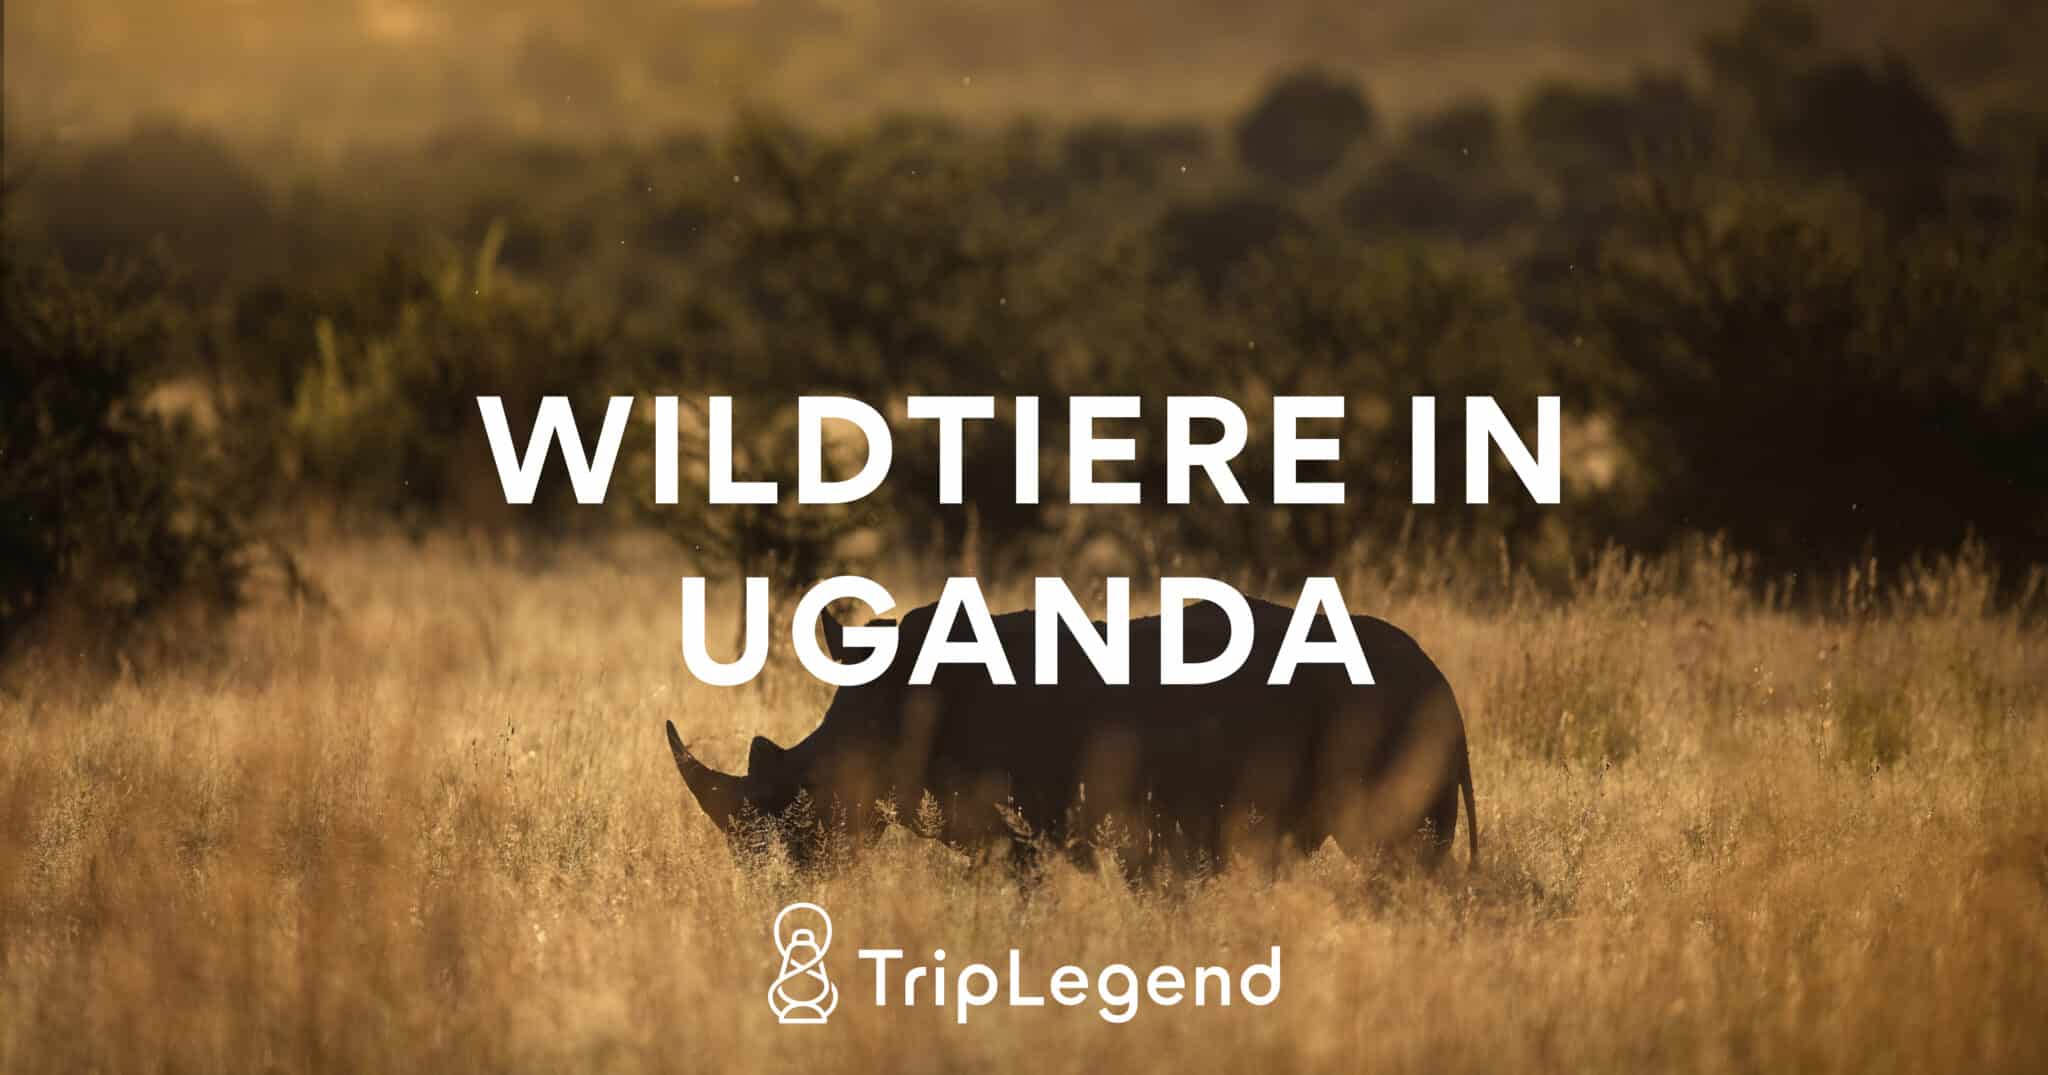 Image de contribution pour l'article sur la faune sauvage en Ouganda